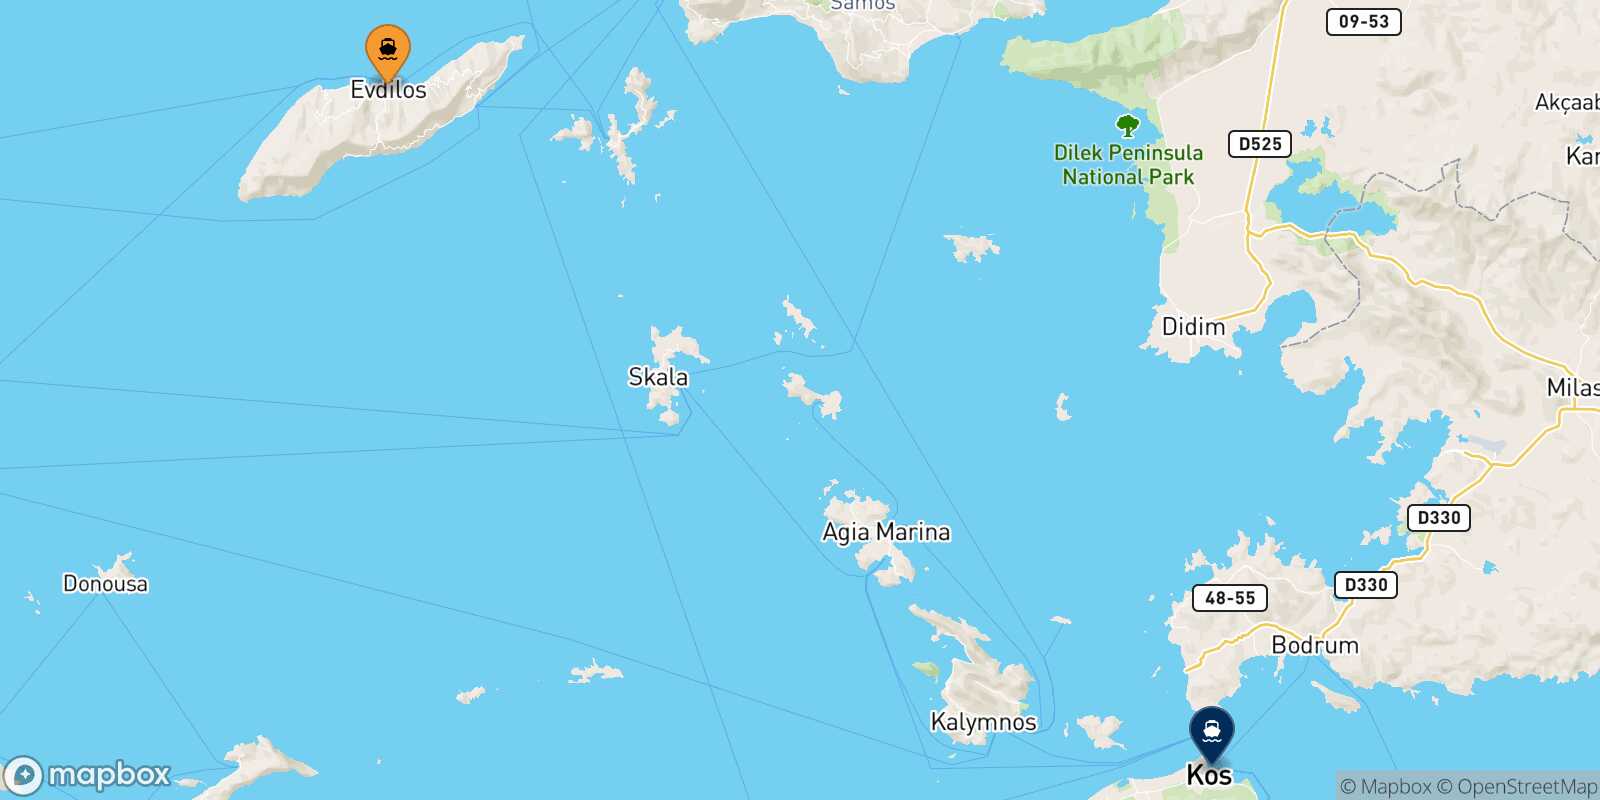 Mapa de la ruta Evdilos (Ikaria) Kos